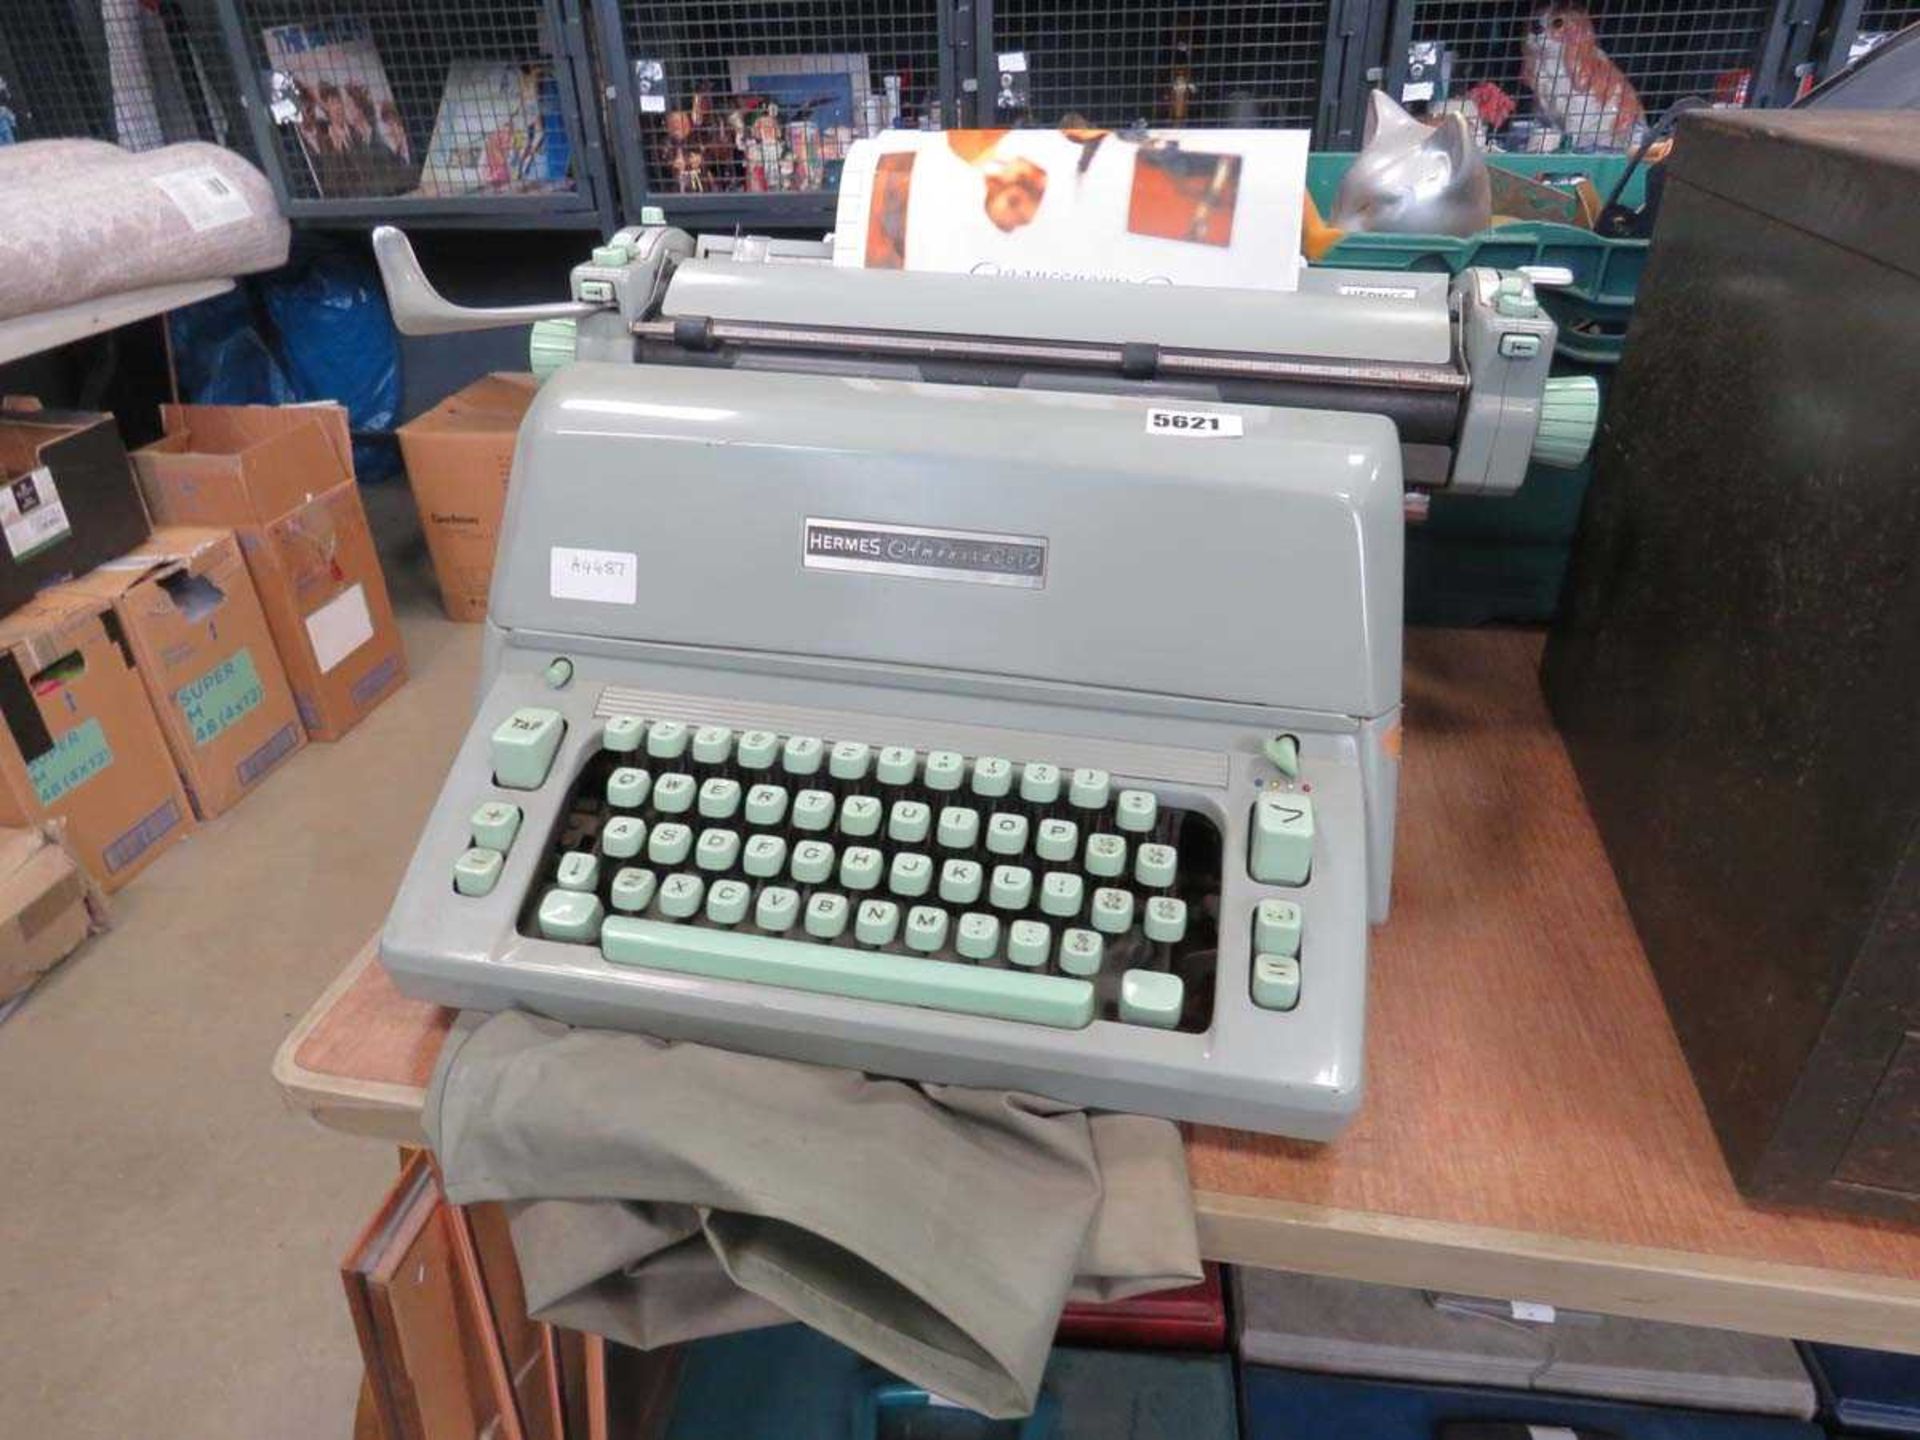 Hermes typewriter